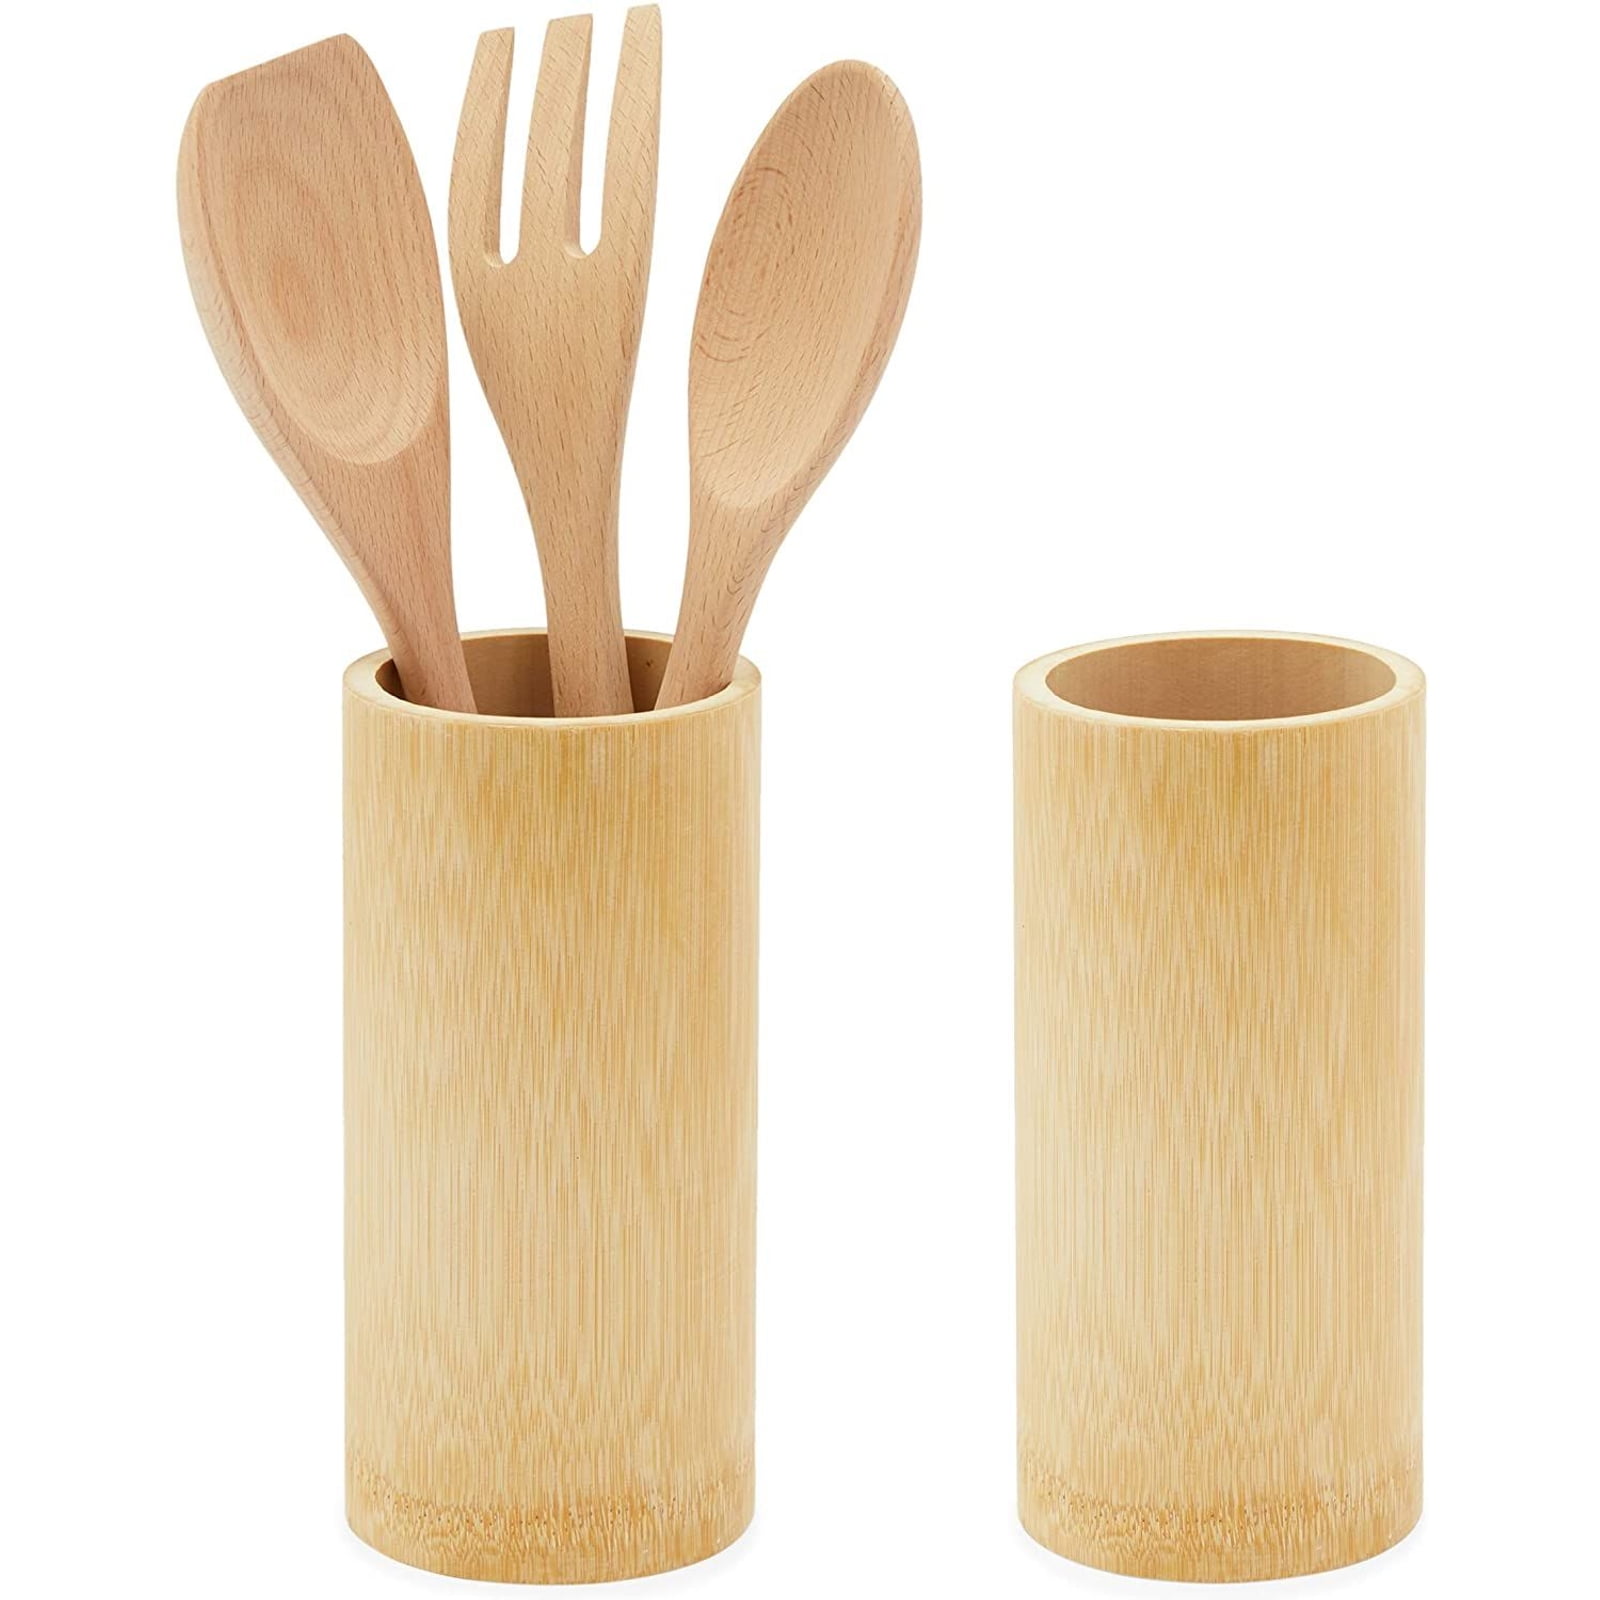 Bamboo Chopsticks Storage Kitchen Utensils Holder Caddy Organizer Set of 2 